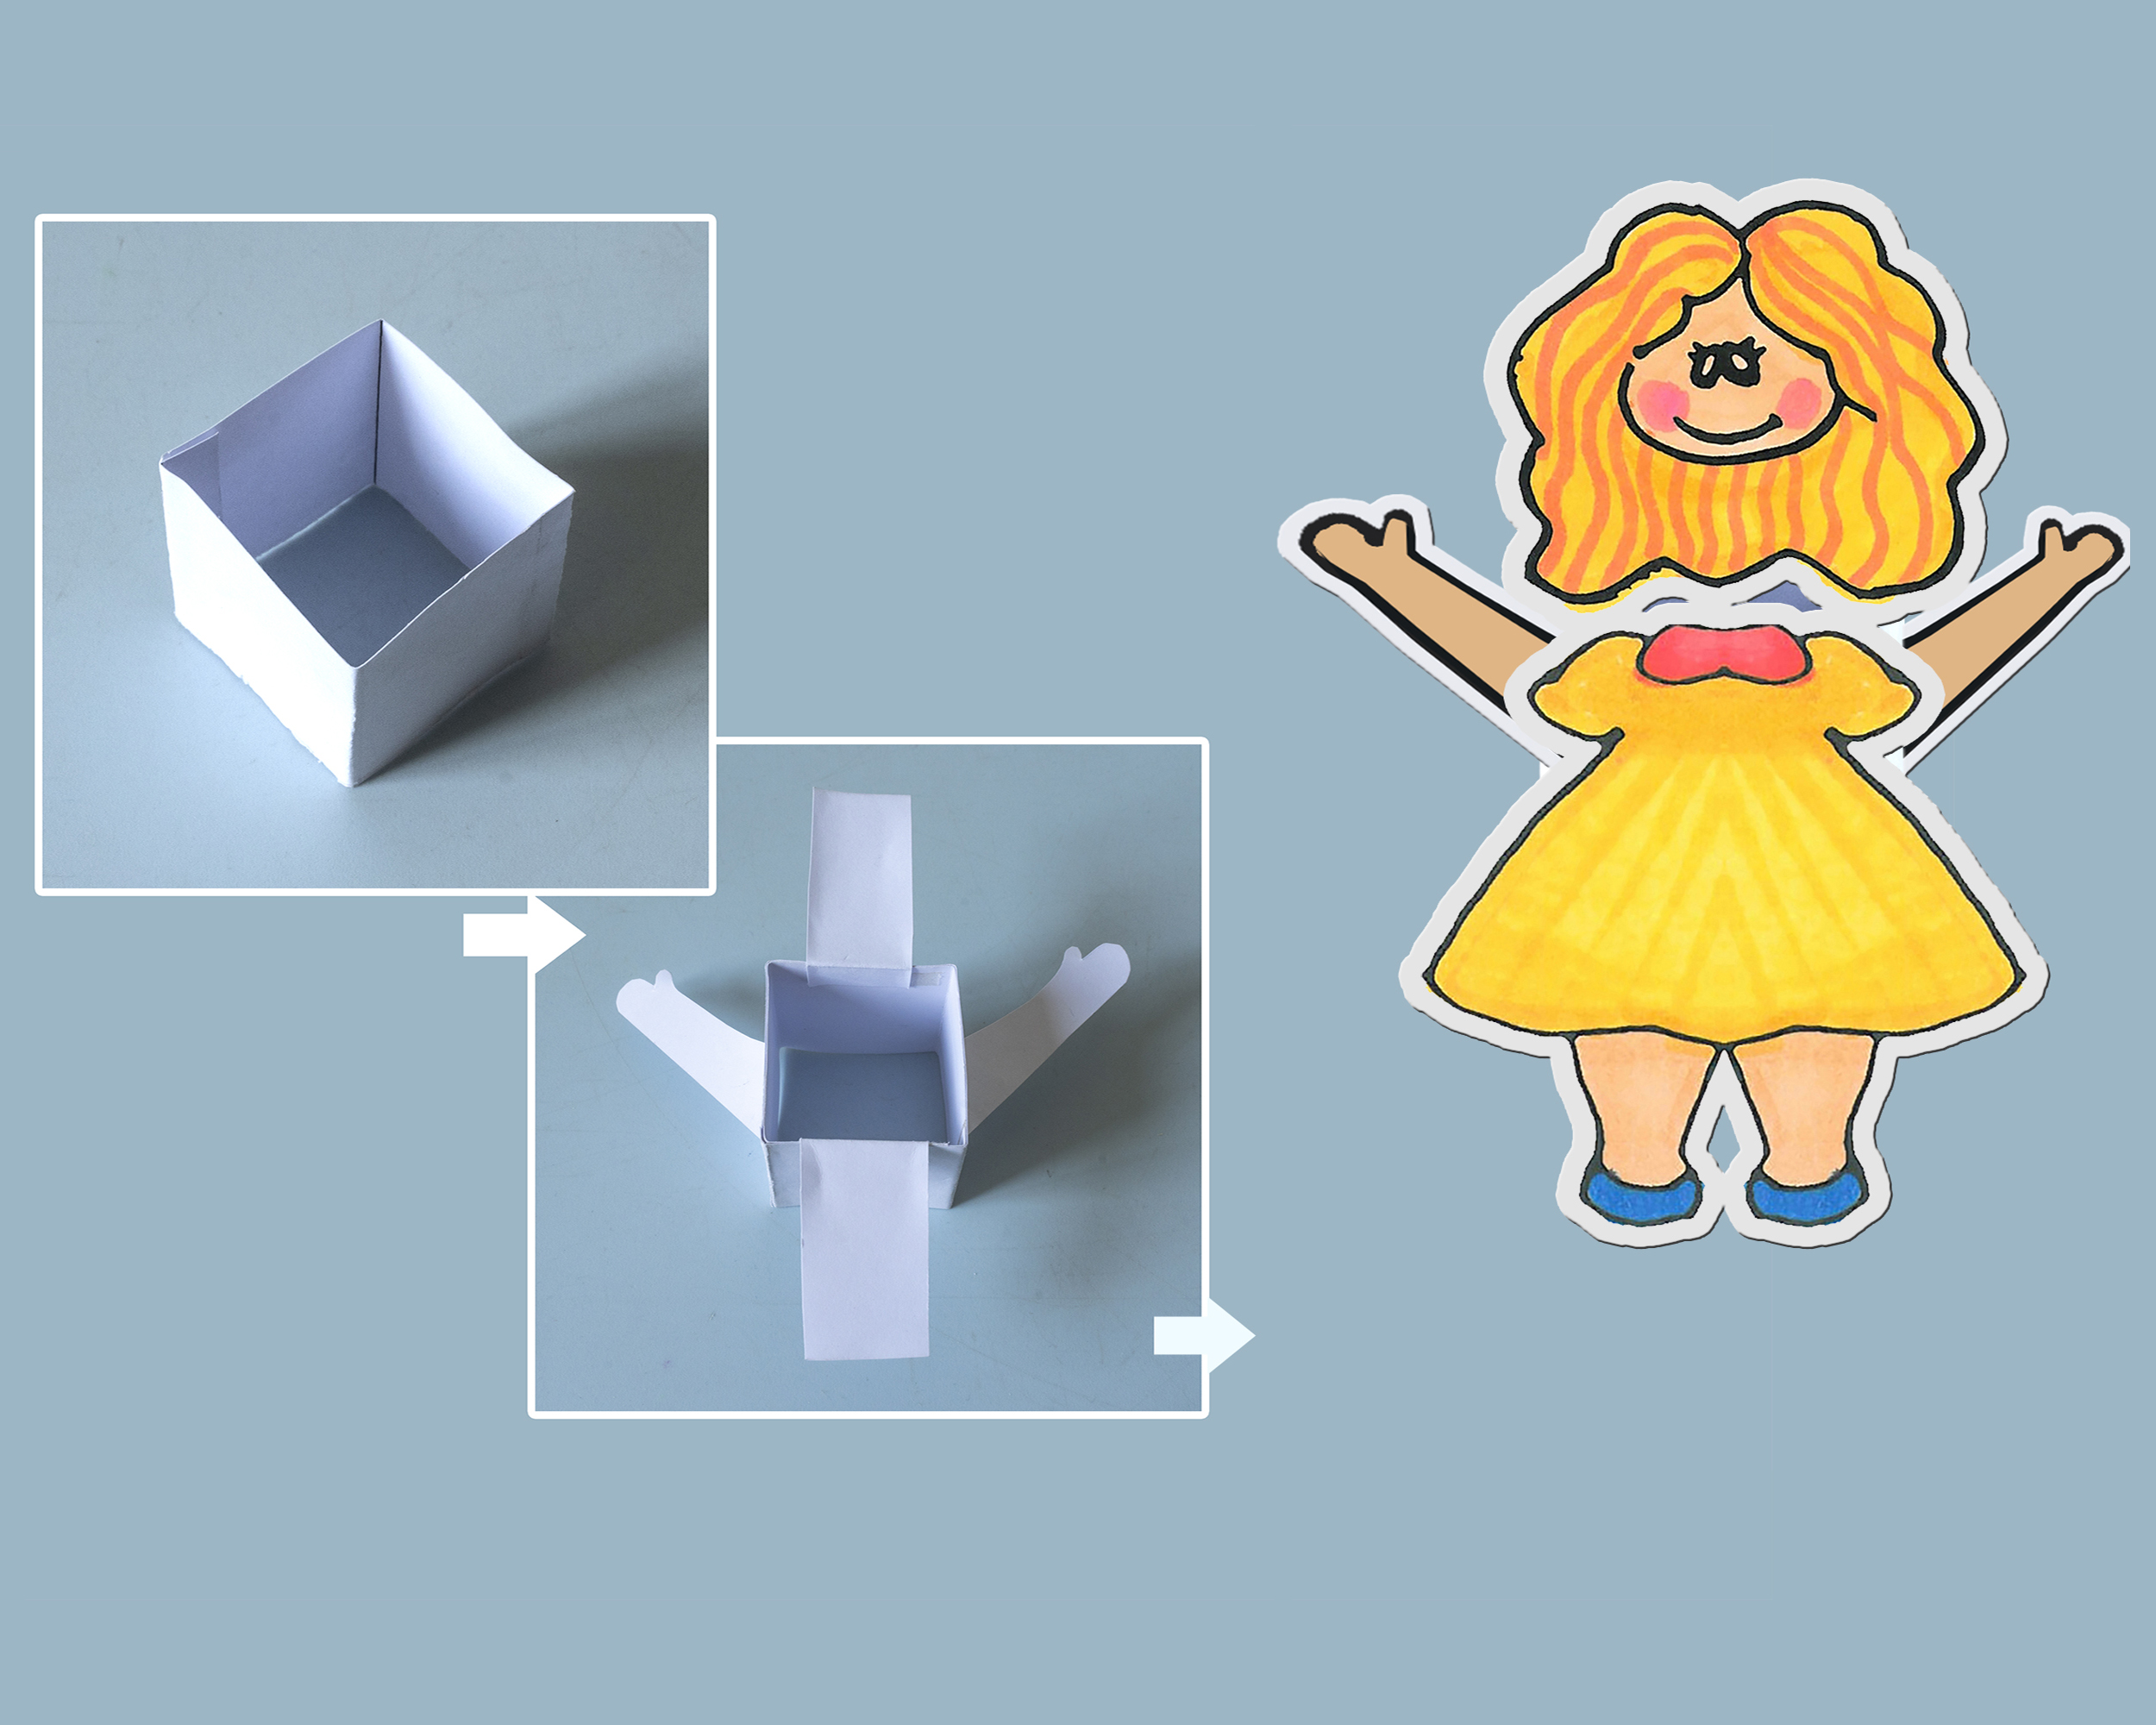 简易小手工大全图片 女孩手绘折纸动画DIY方法步骤